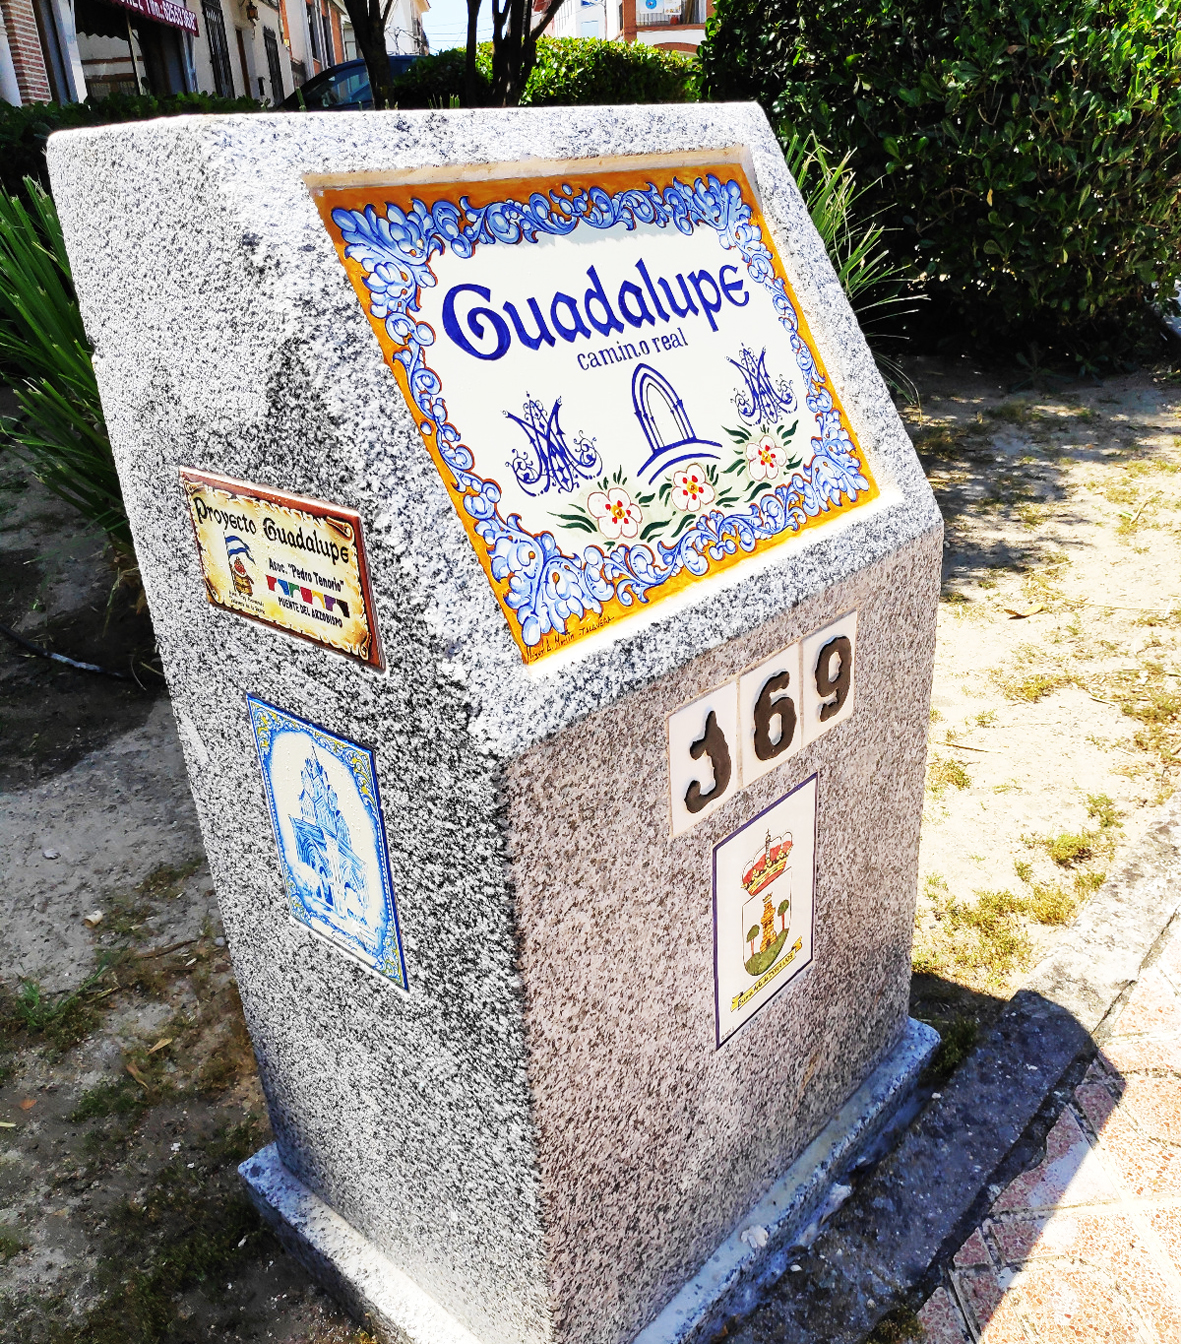 Con el año jubileo en Torrijos se ponen las nuevas señalizaciones hacia Guadalupe